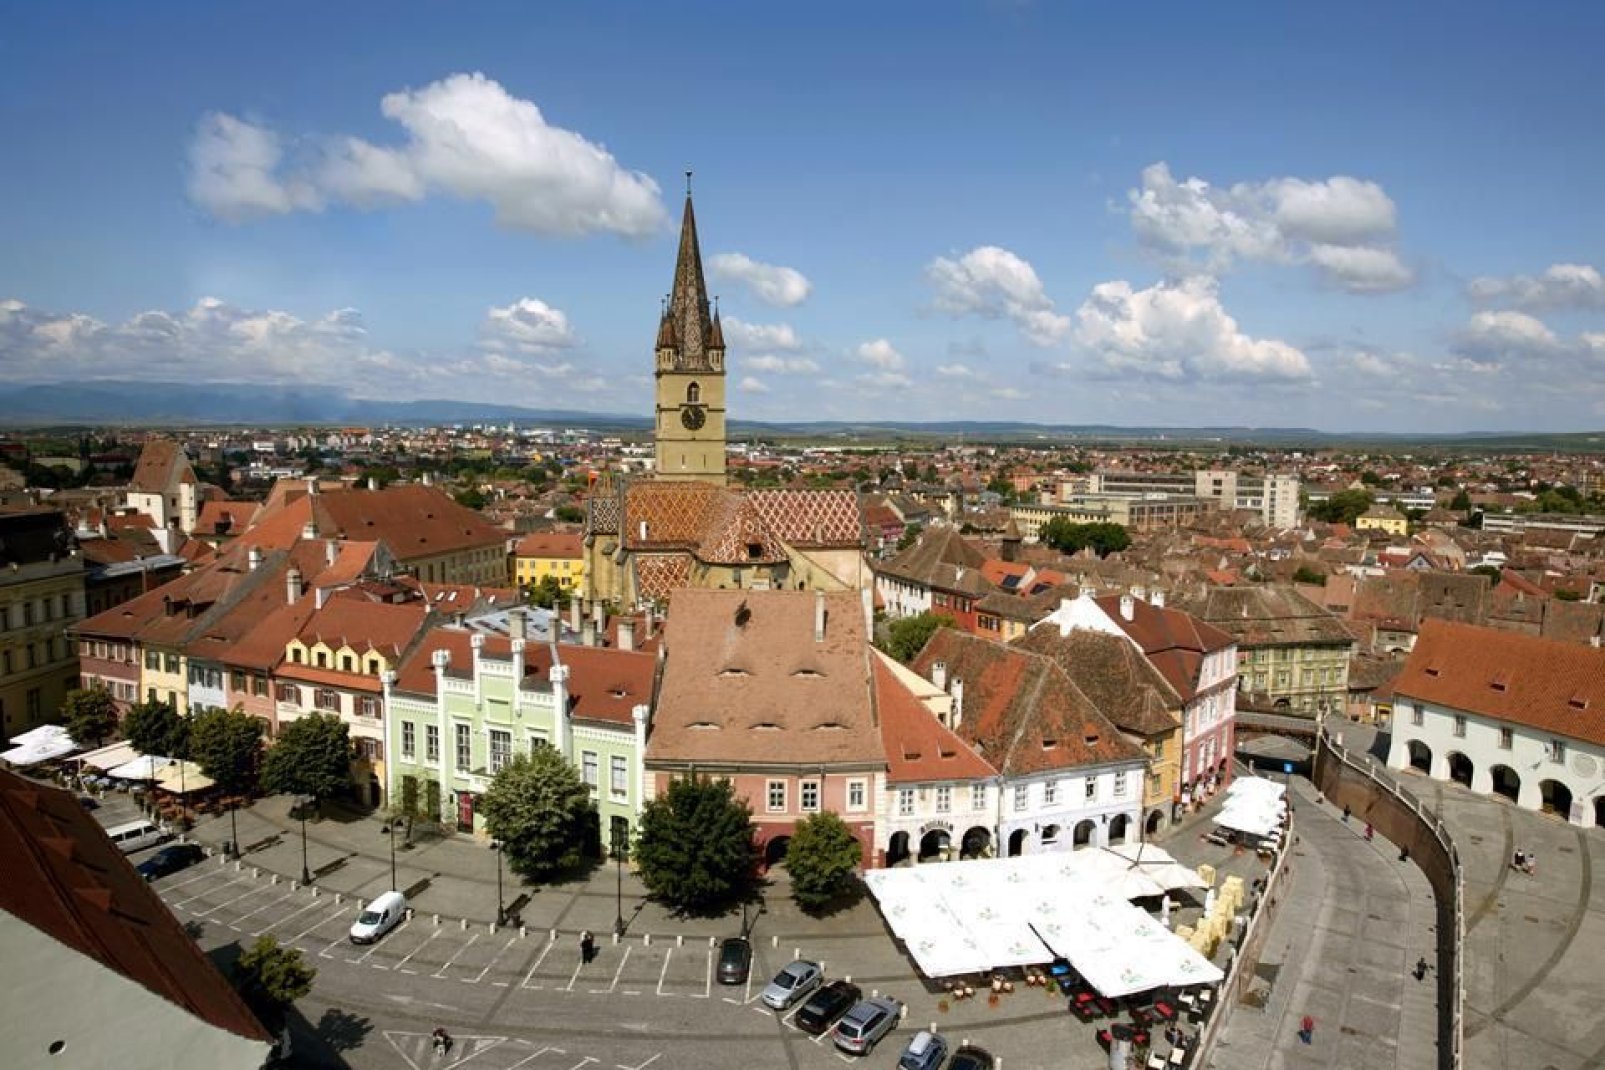 Das historische Zentrum rund um die evangelische Stadtpfarrkirche ist einer der bedeutendsten mittelalterlichen Komplexe von Rumnien.